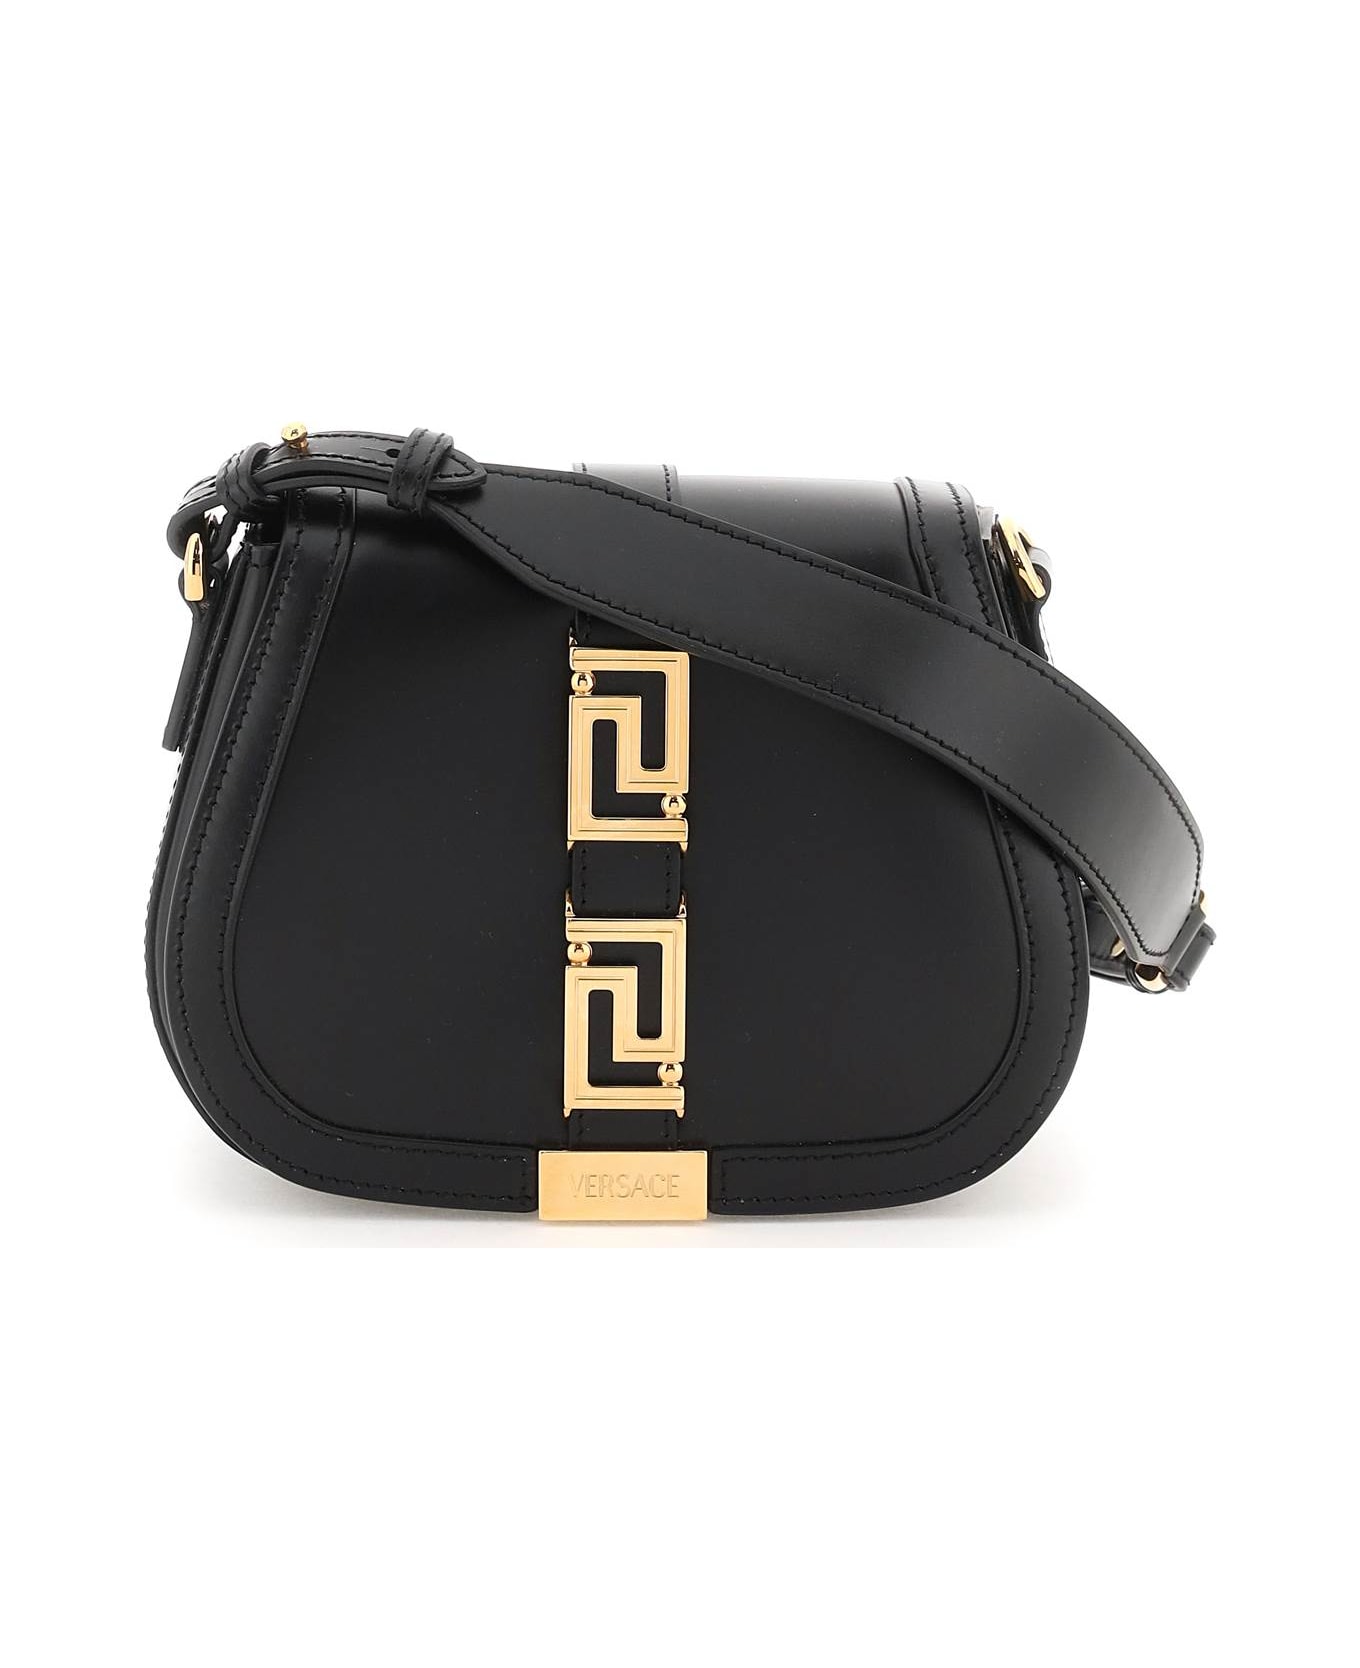 Versace Greca Goddess Leather Shoulder Bag - Black トートバッグ